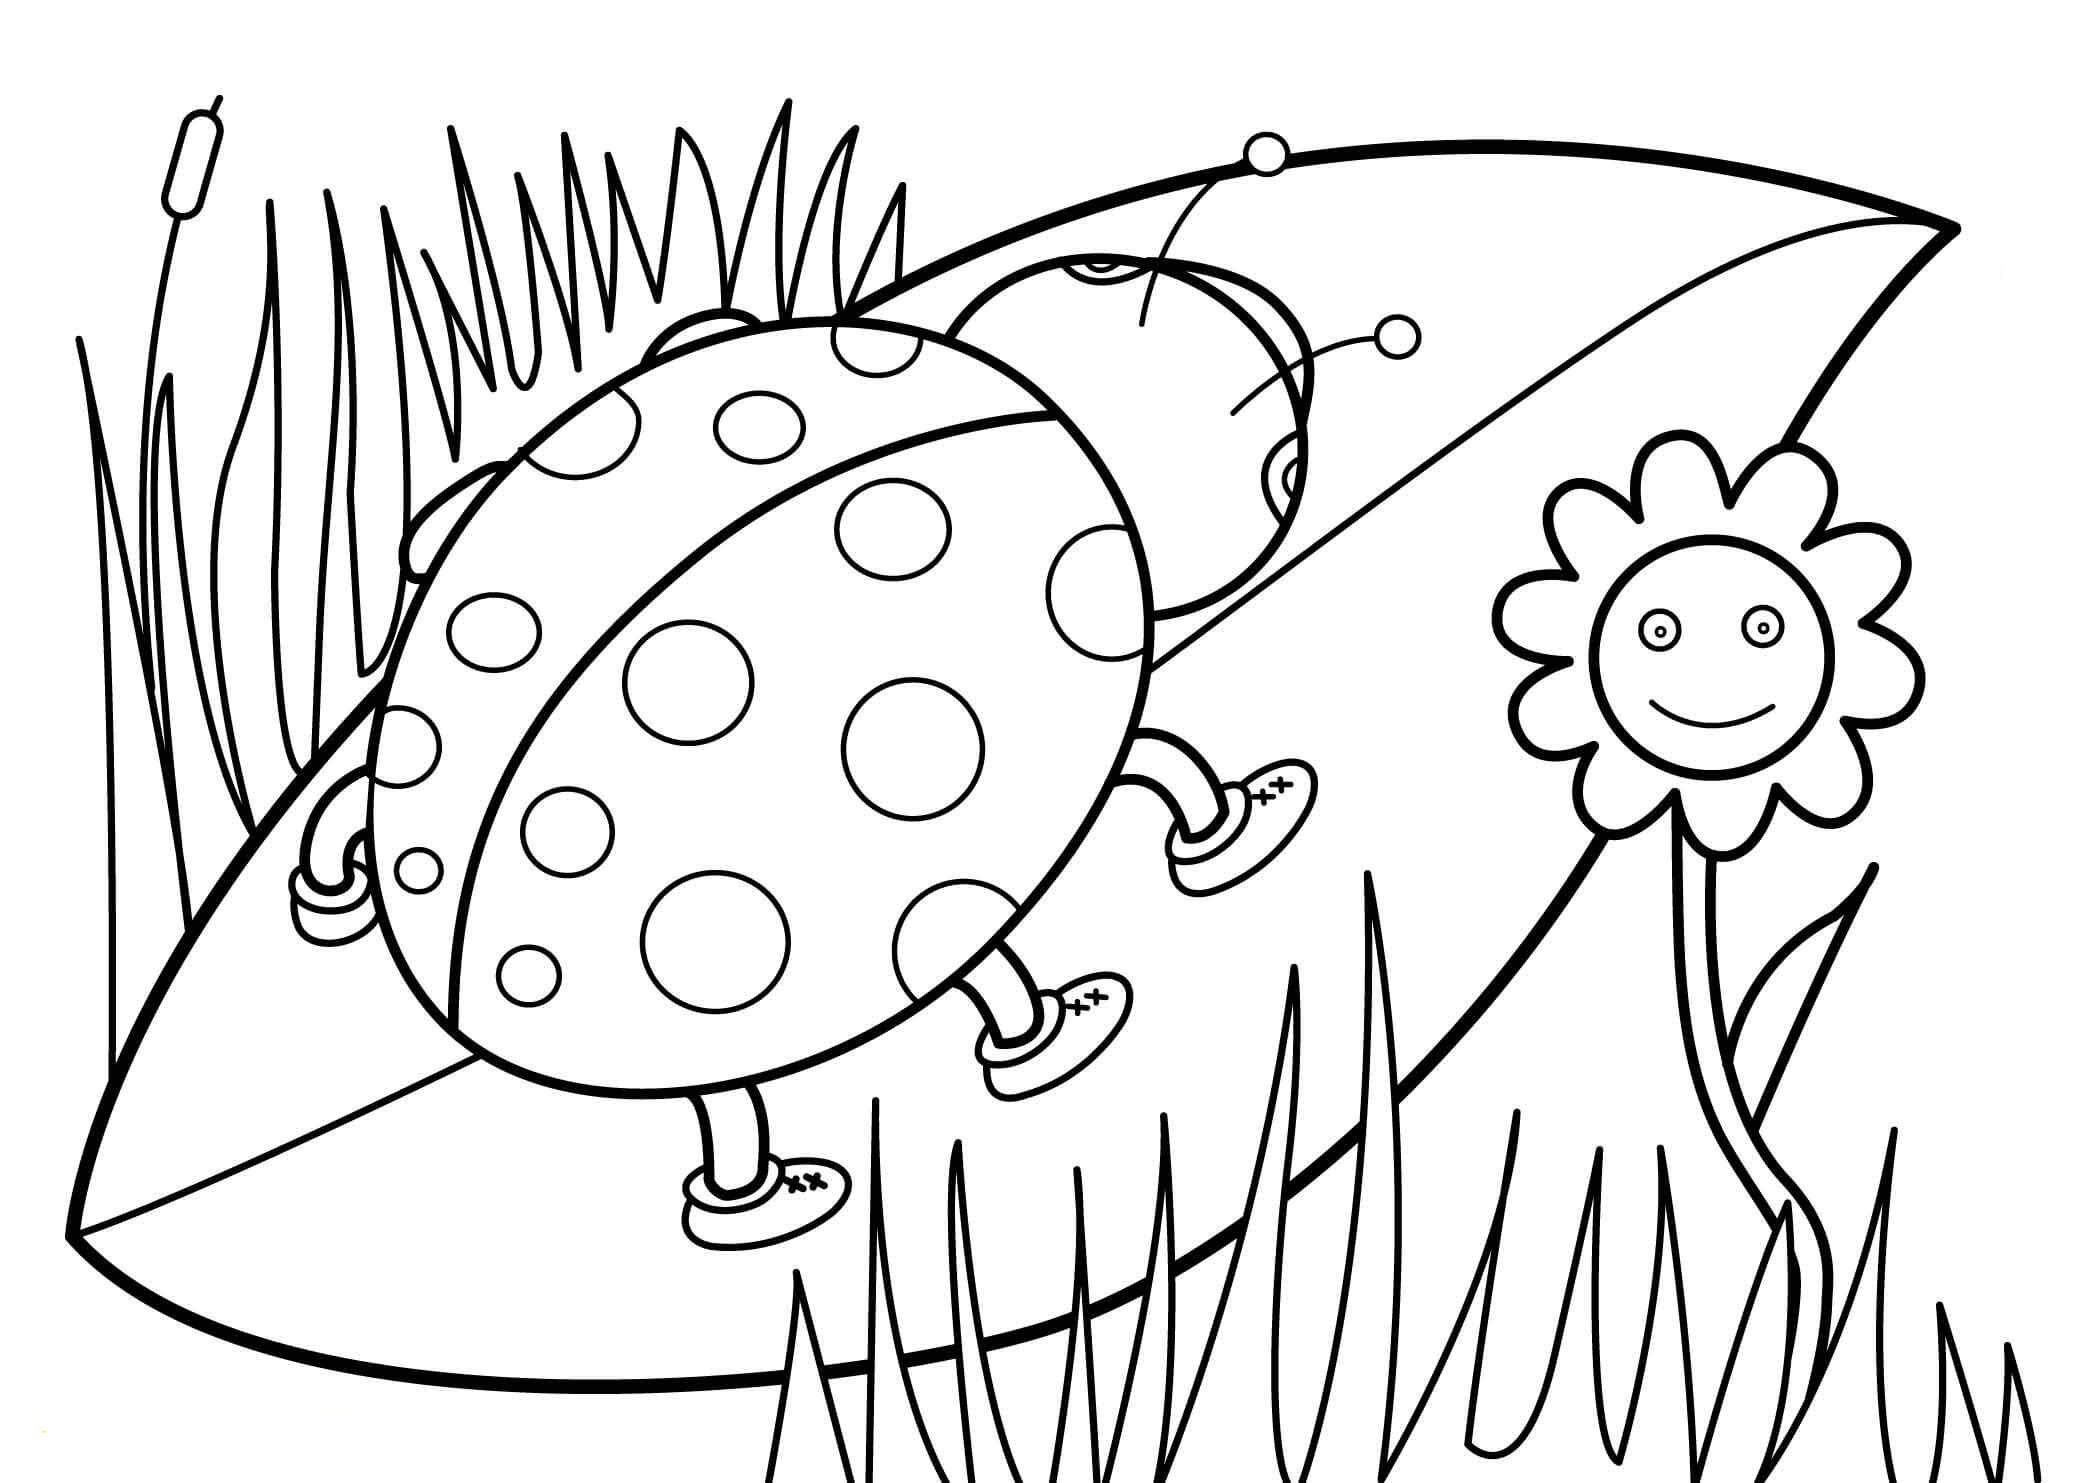 Een lieveheersbeestje op een blad